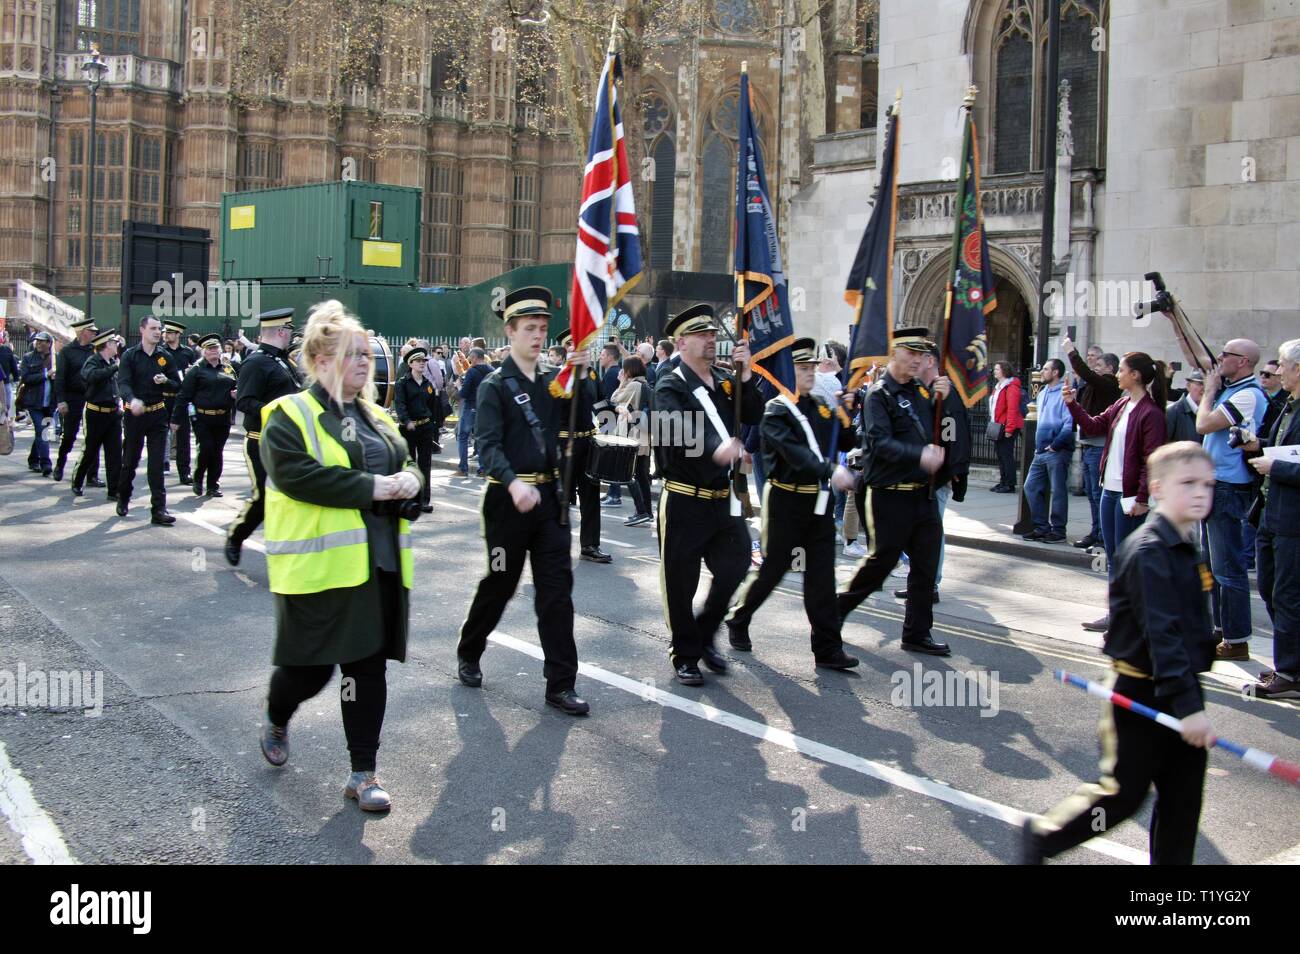 Westminster, London, UK. 29 Mar 2019. Brexit Pro manifestants se rassemblent à l'extérieur du Parlement, Westminster, Royaume-Uni Crédit : Knelstrom Ltd/Alamy Live News Banque D'Images